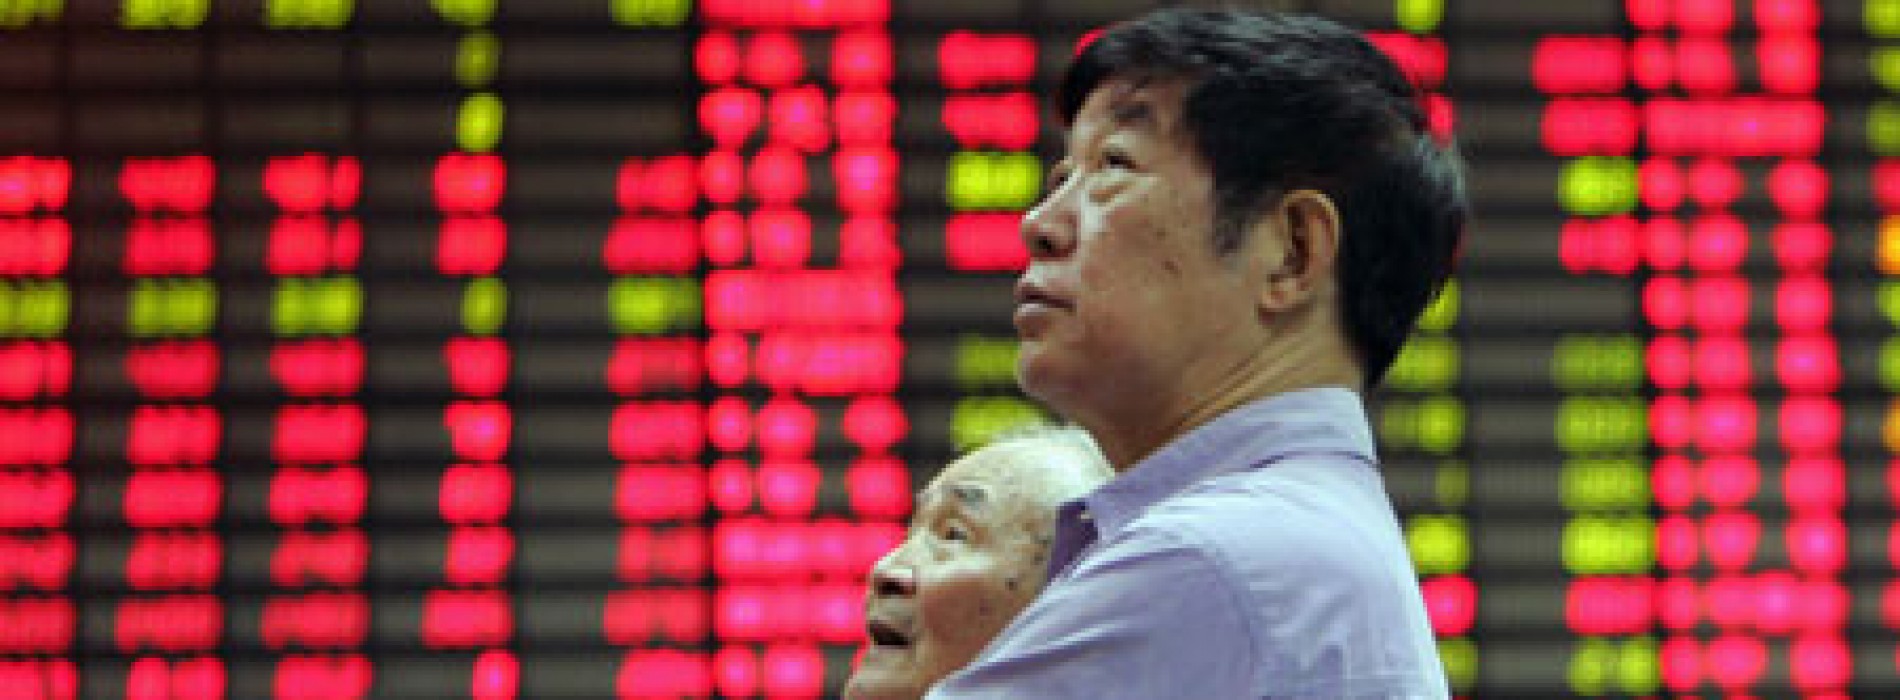 Poranny komentarz giełdowy – silne spadki w Hong Kongu